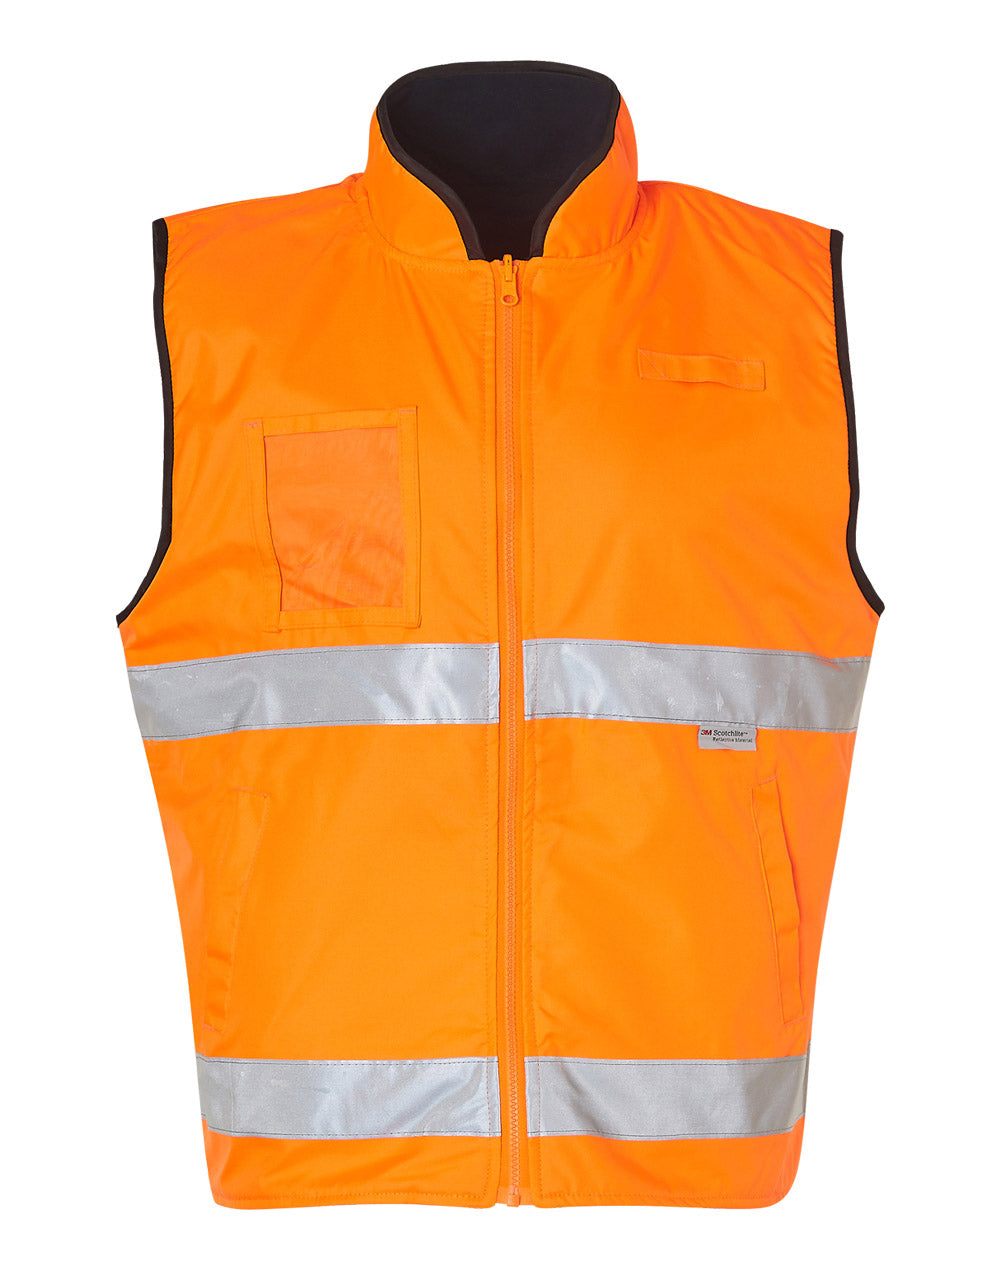 [SW49] Hi-Vis Reversible Mandarine Collar Safety Vest With 3M Tapes